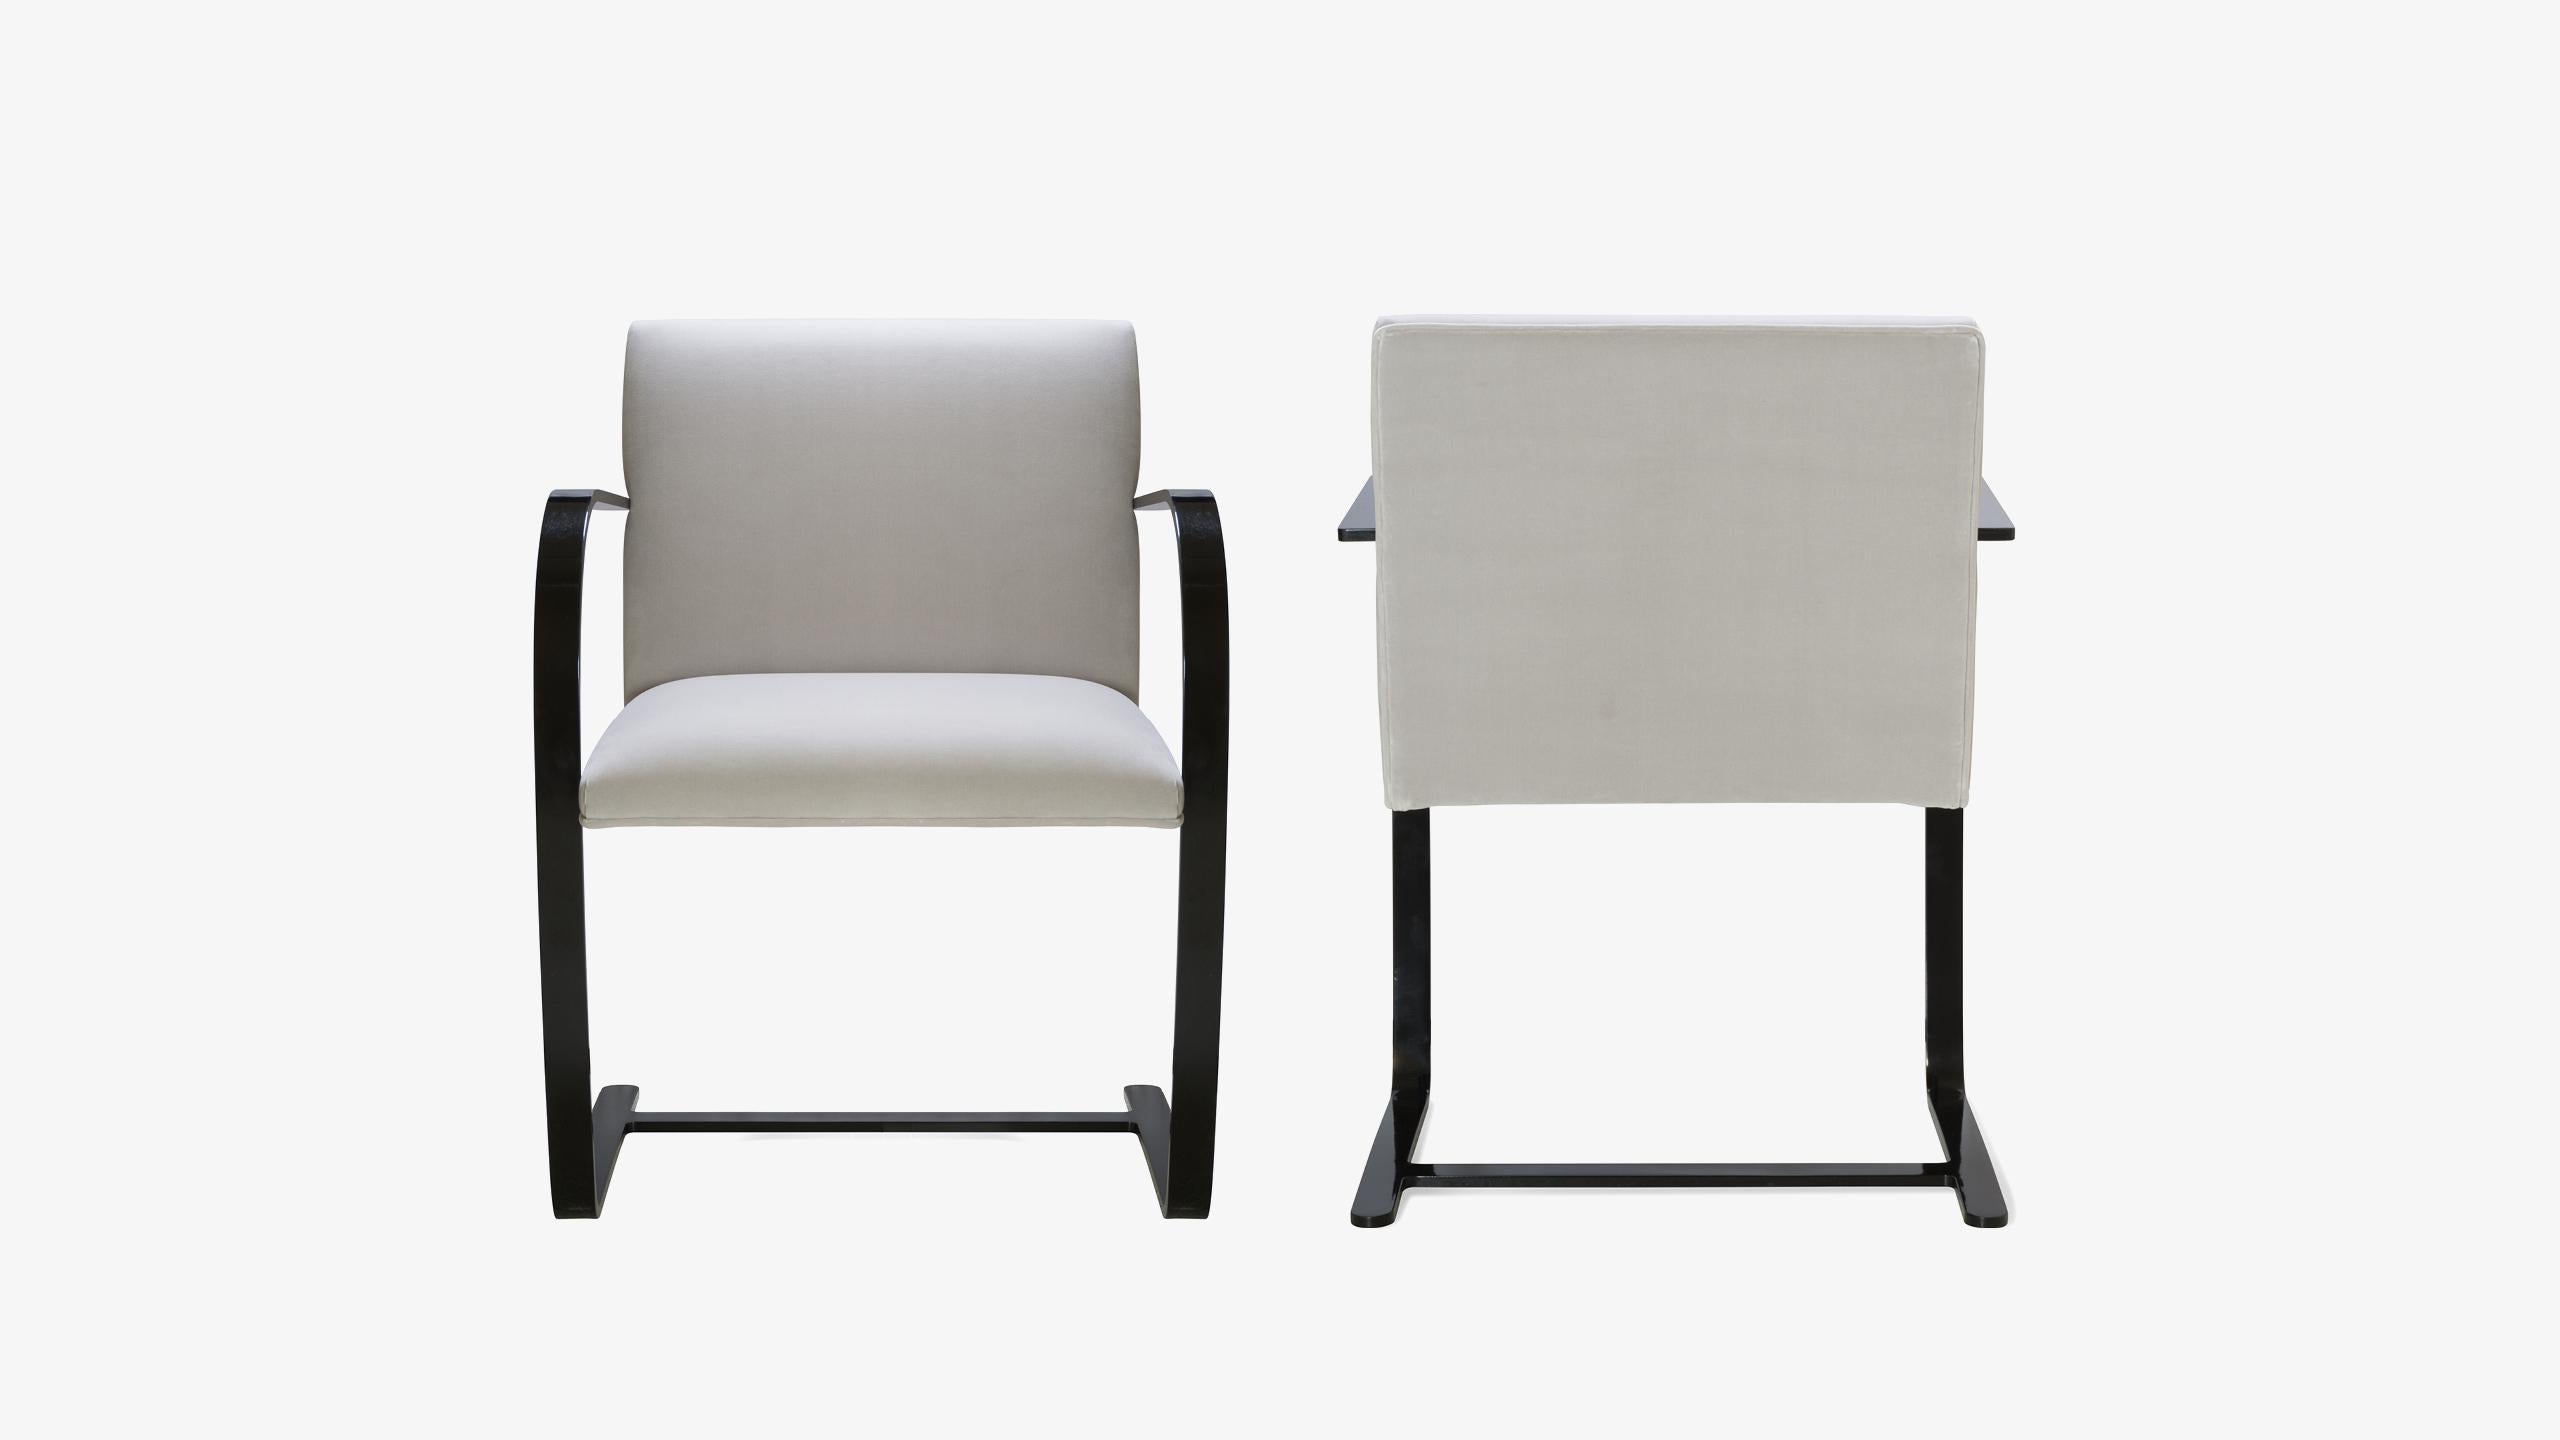 Die Definition des Minimalismus in einem einzigartigen Design, das der große Ludwig Mies van der Rohe im Jahr 1929 geschaffen hat; der Brno Flat-Bar Stuhl ist genau das. Wir haben diese zeitgenössischen Iterationen authentischer Originale auf eine